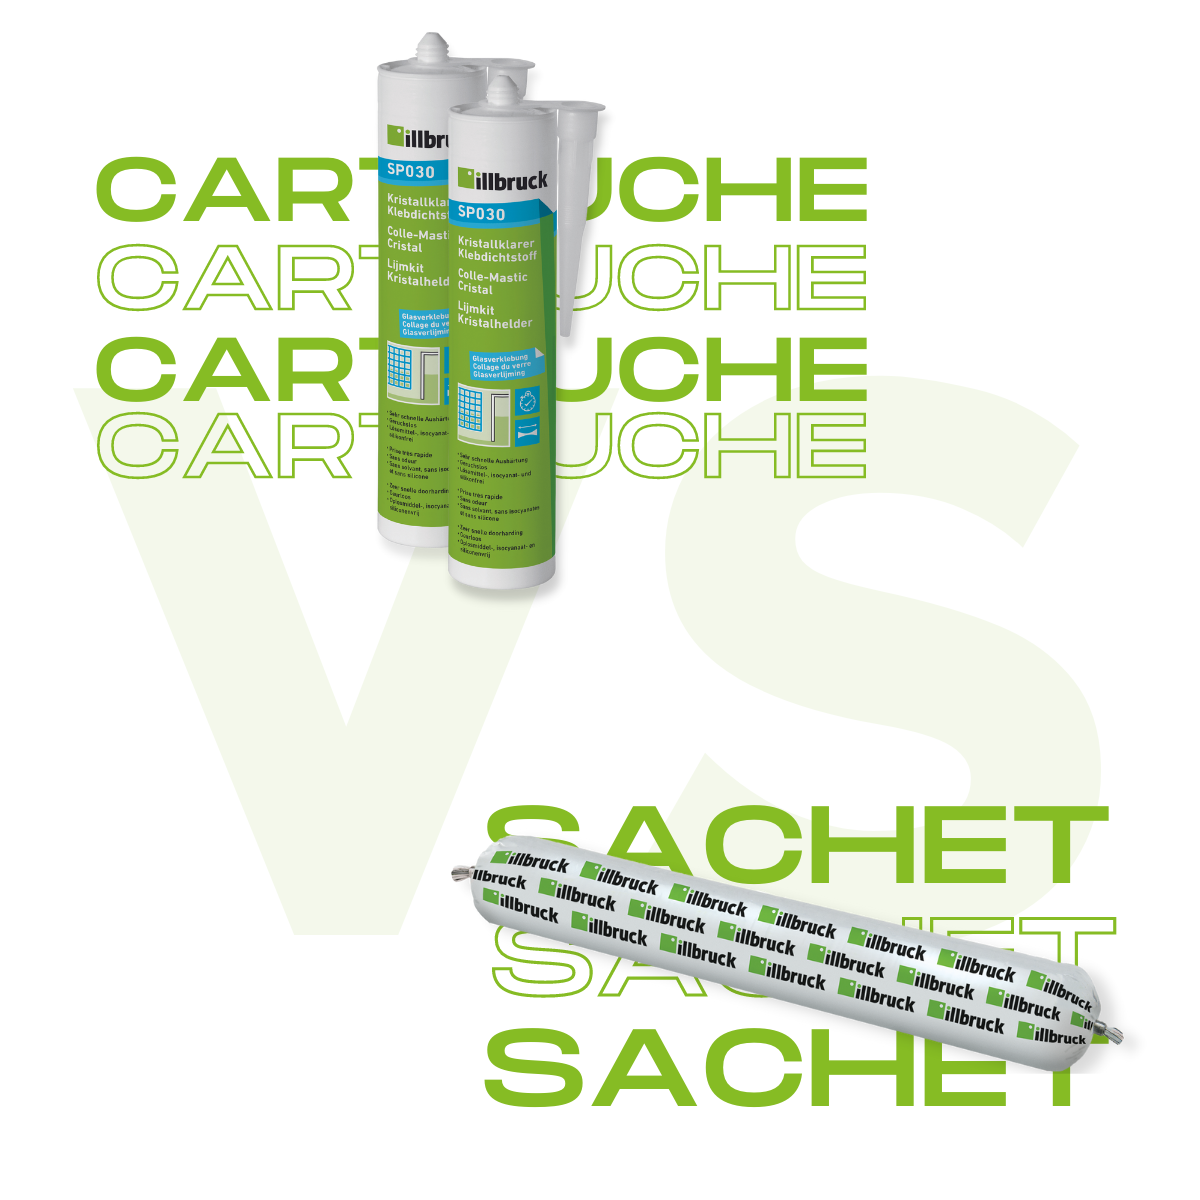 Sachet VS Cartouche-1